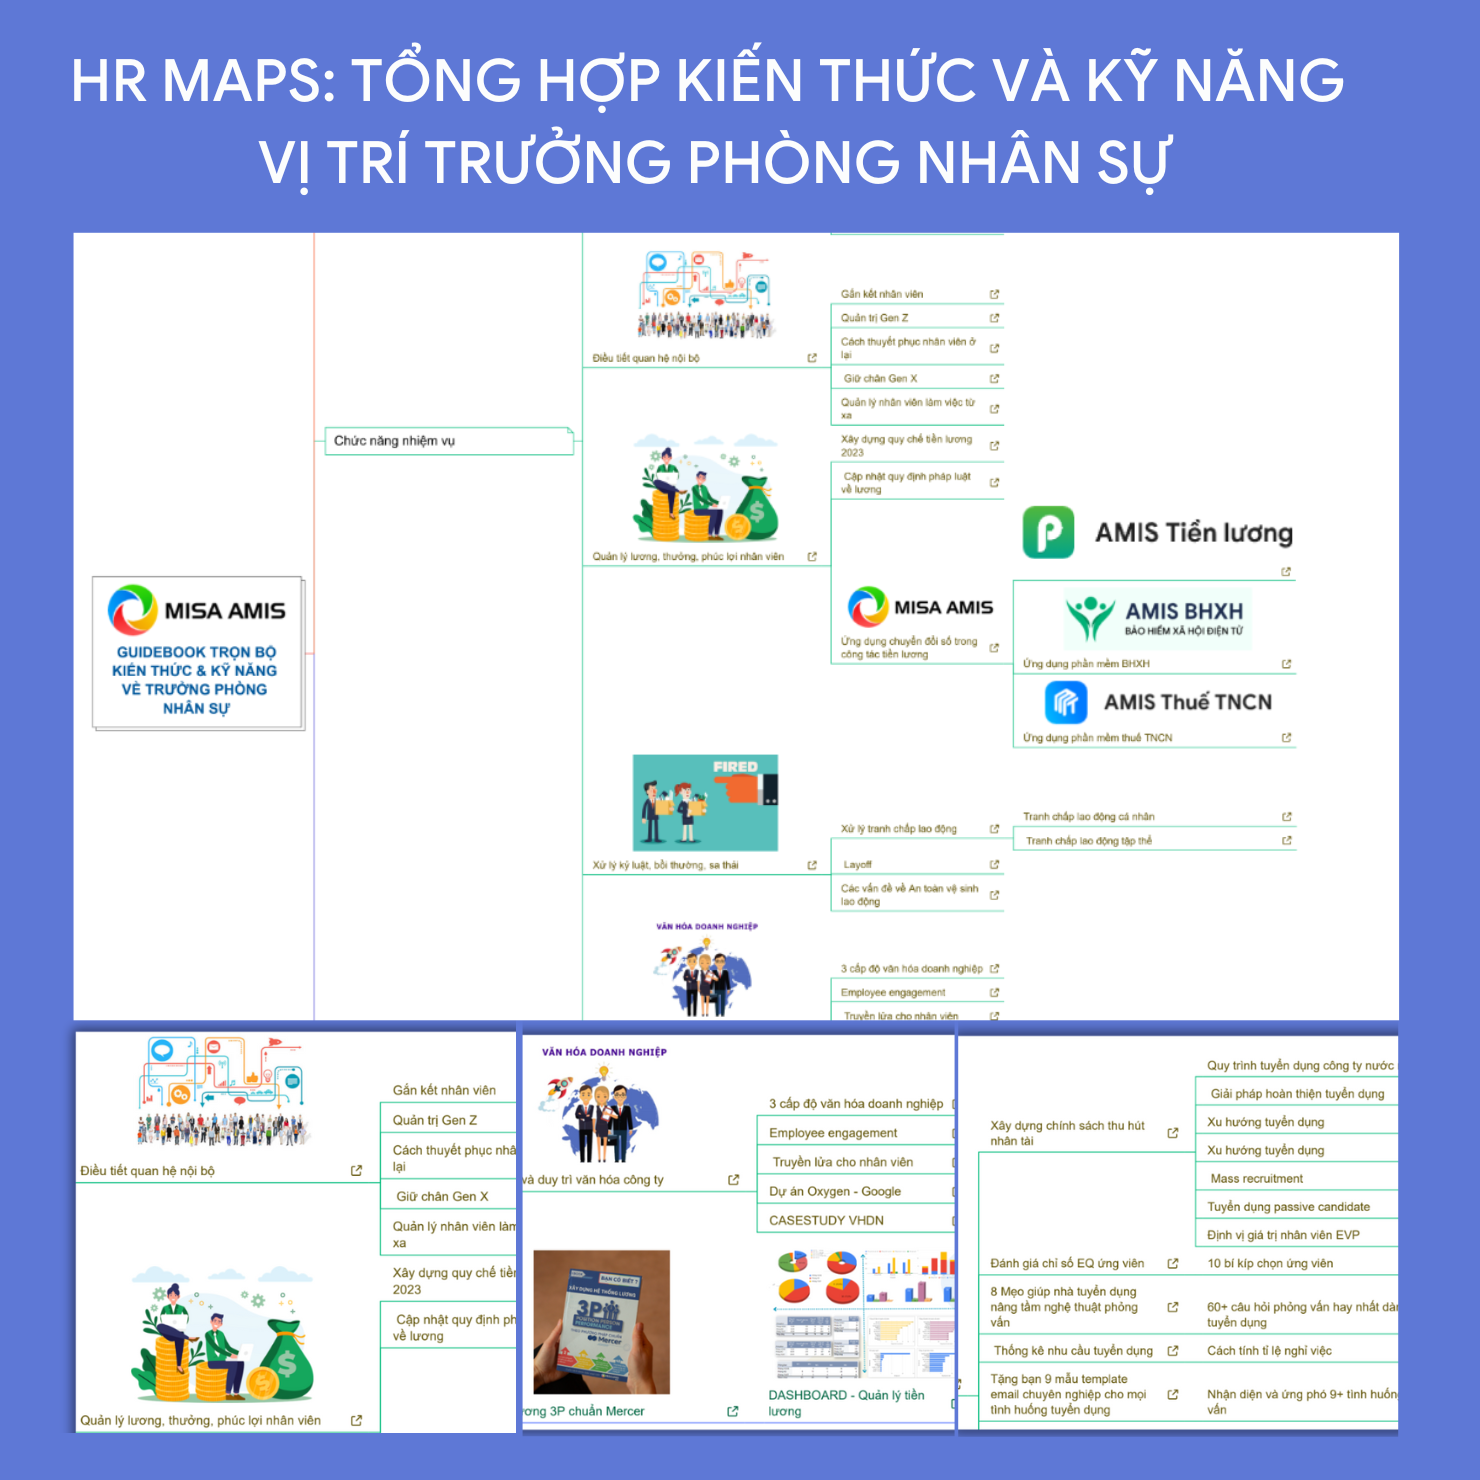 HR Map là gì?